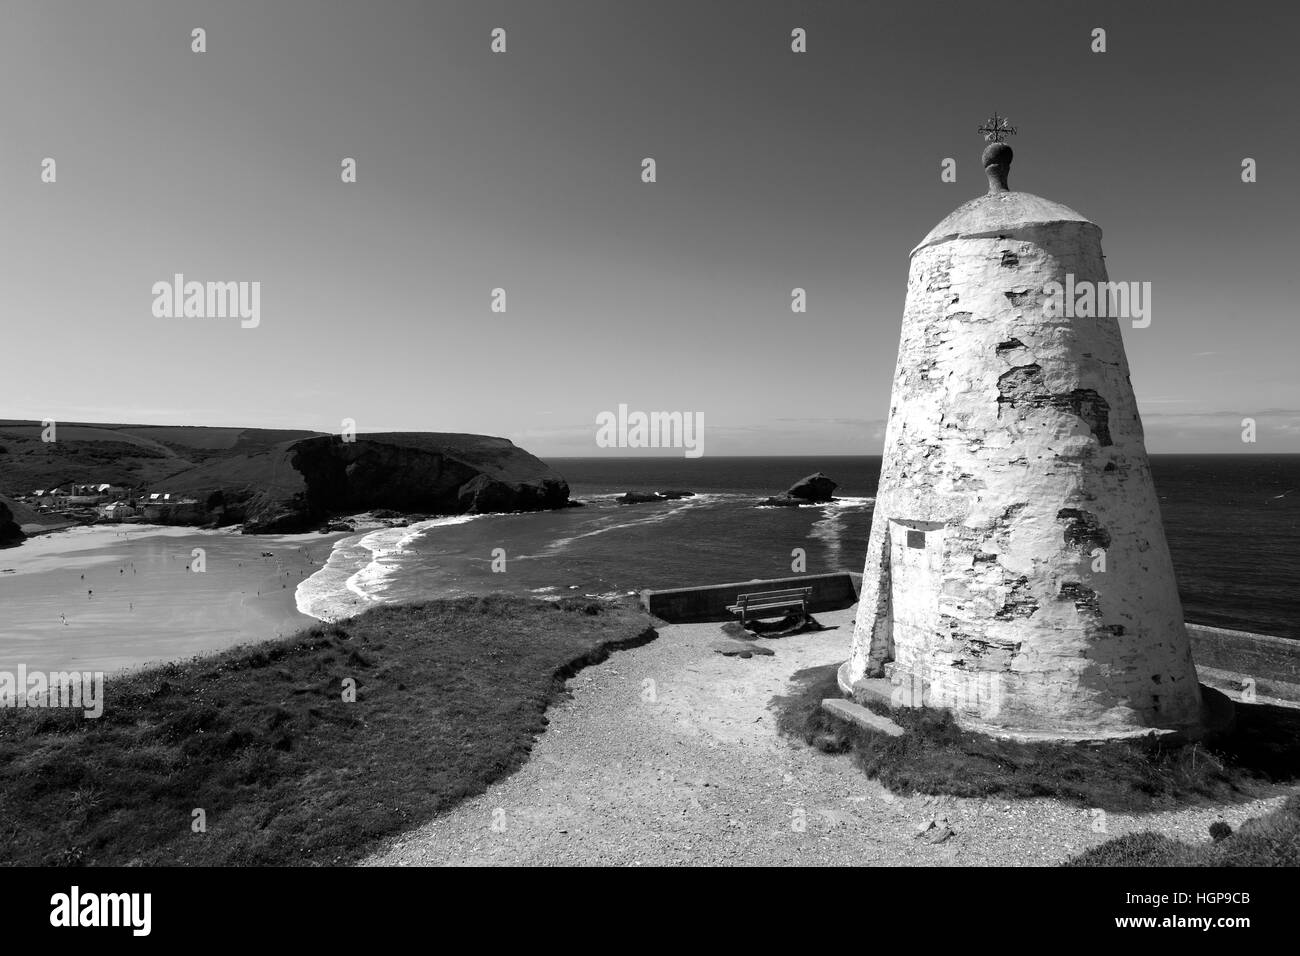 La antigua estación Mirador Pimentero, Lighthouse Hill, Portreath pueblo costero del condado de Cornwall, Inglaterra, Reino Unido. Foto de stock